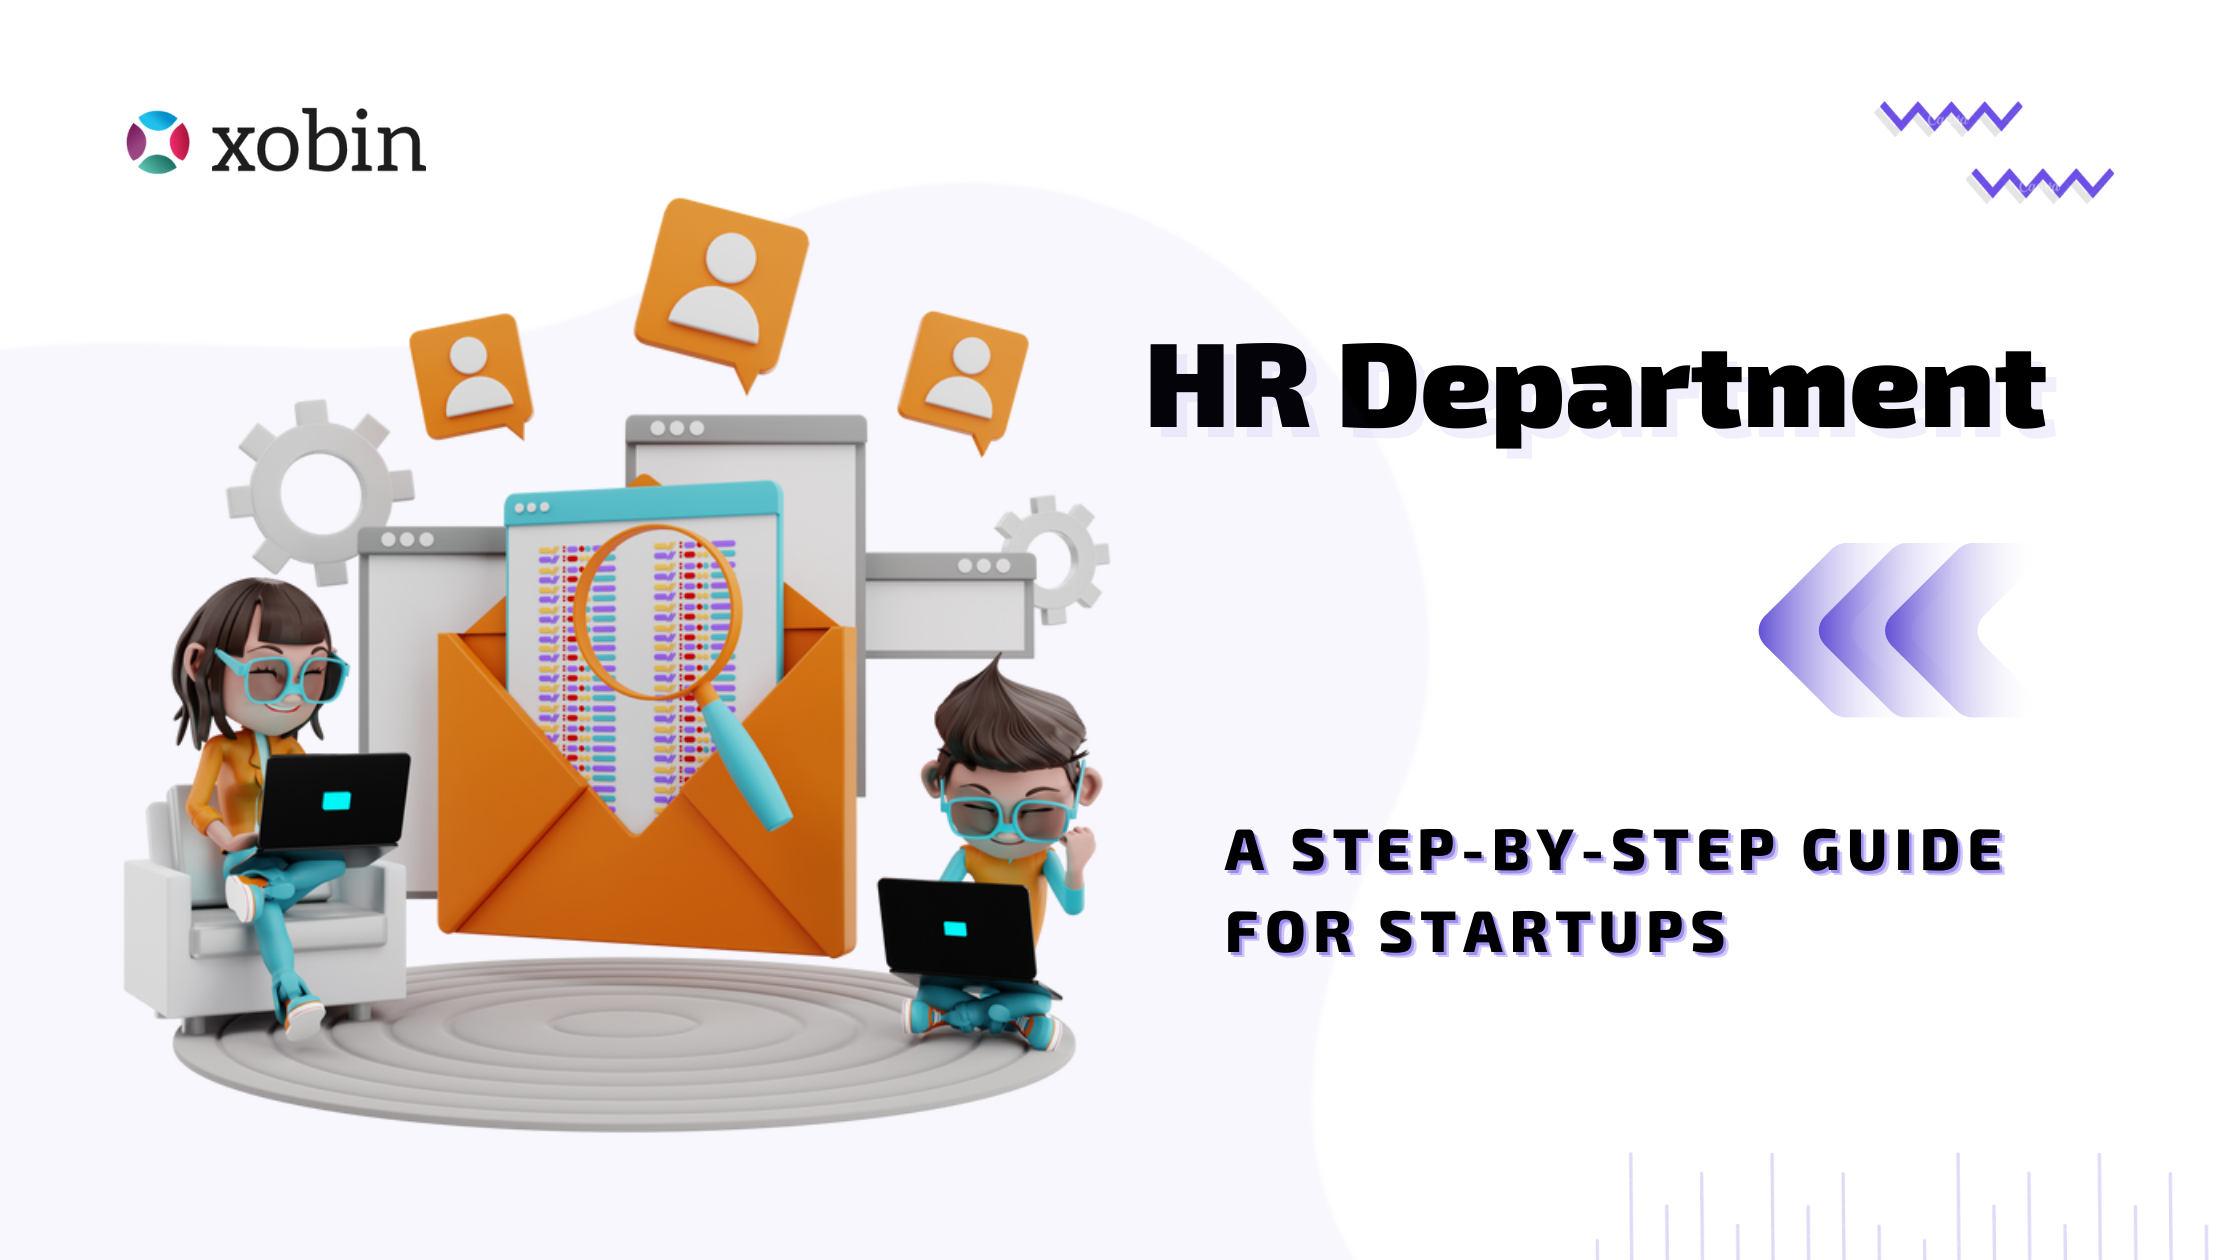 HR Department Checklist for Startups